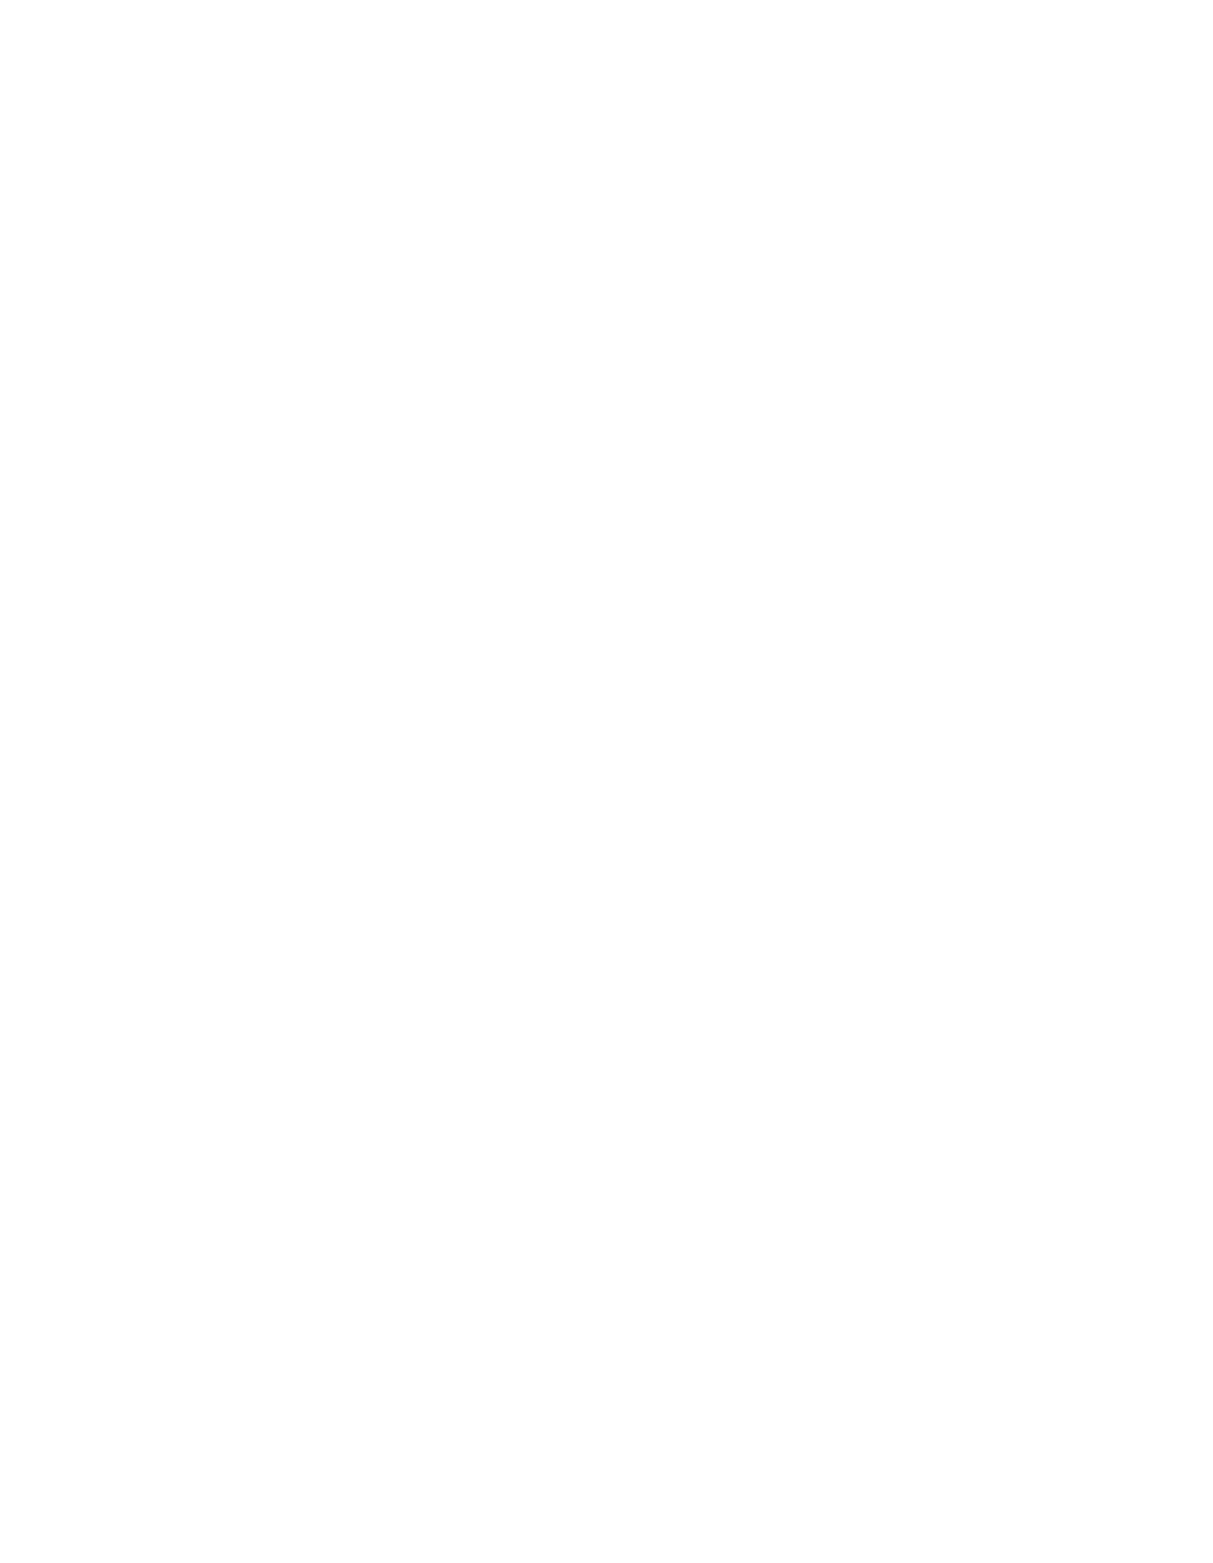 BRANDON SR